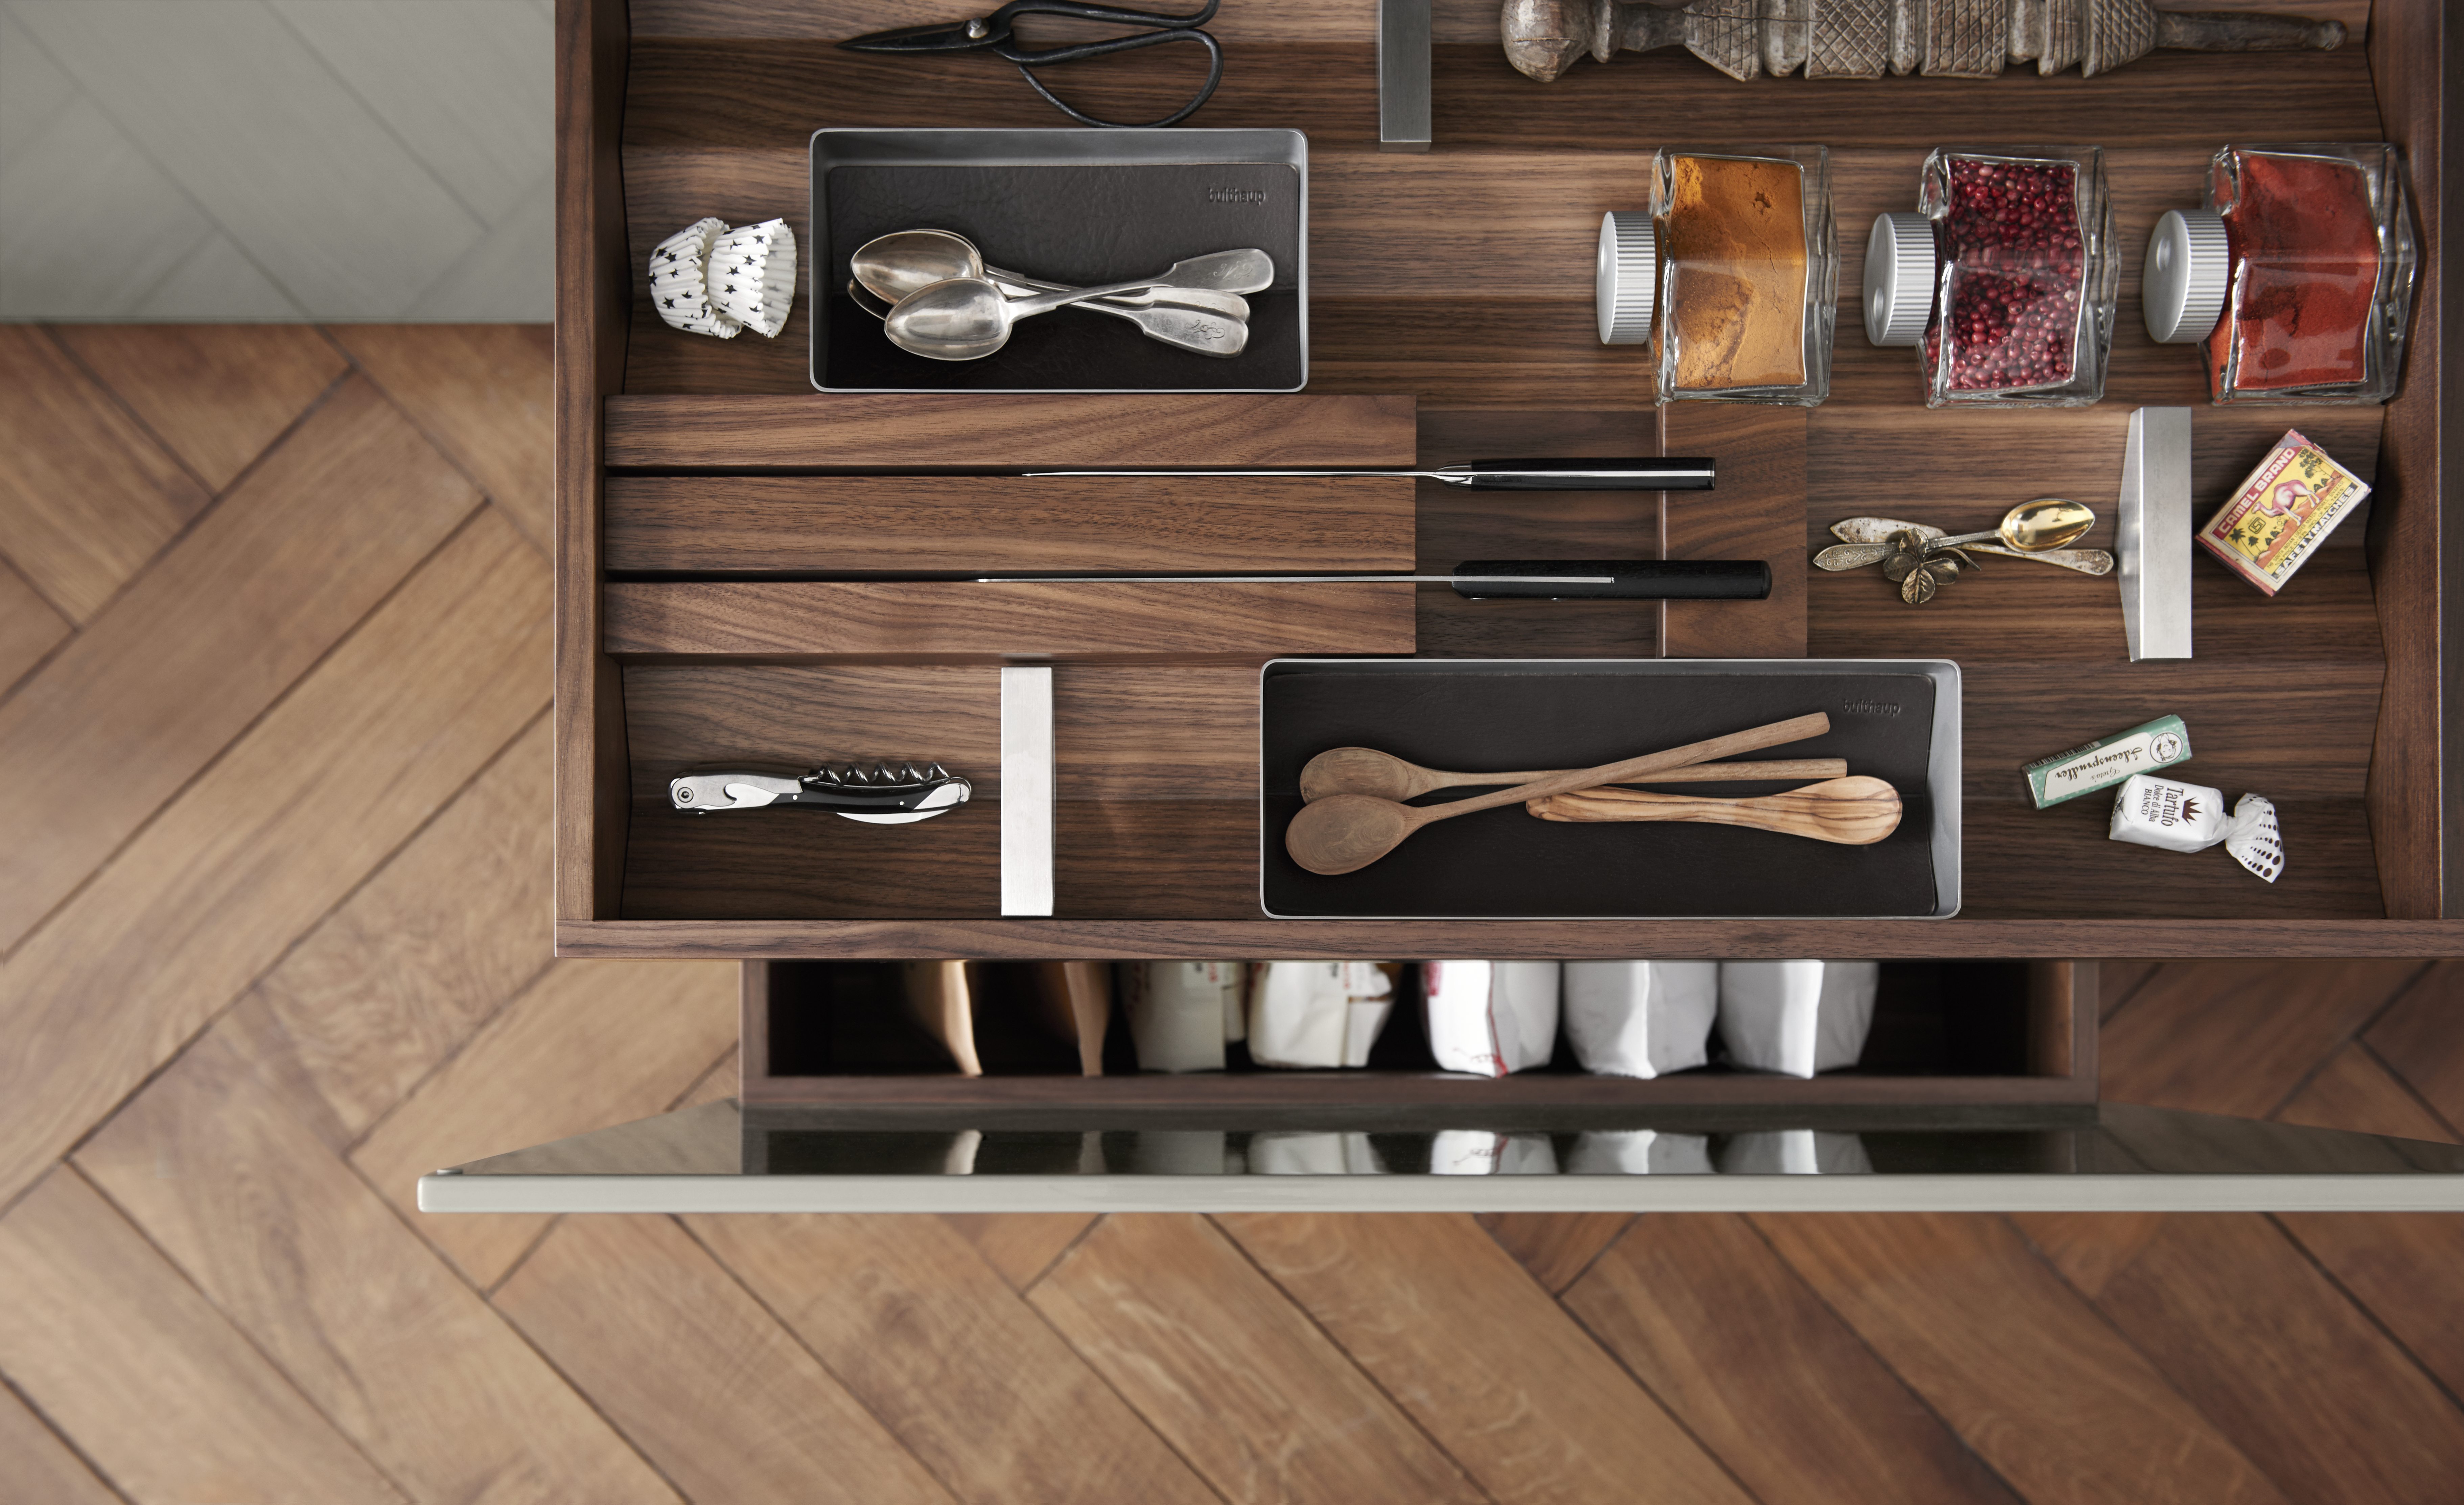 Bulthaup kitchen drawer.